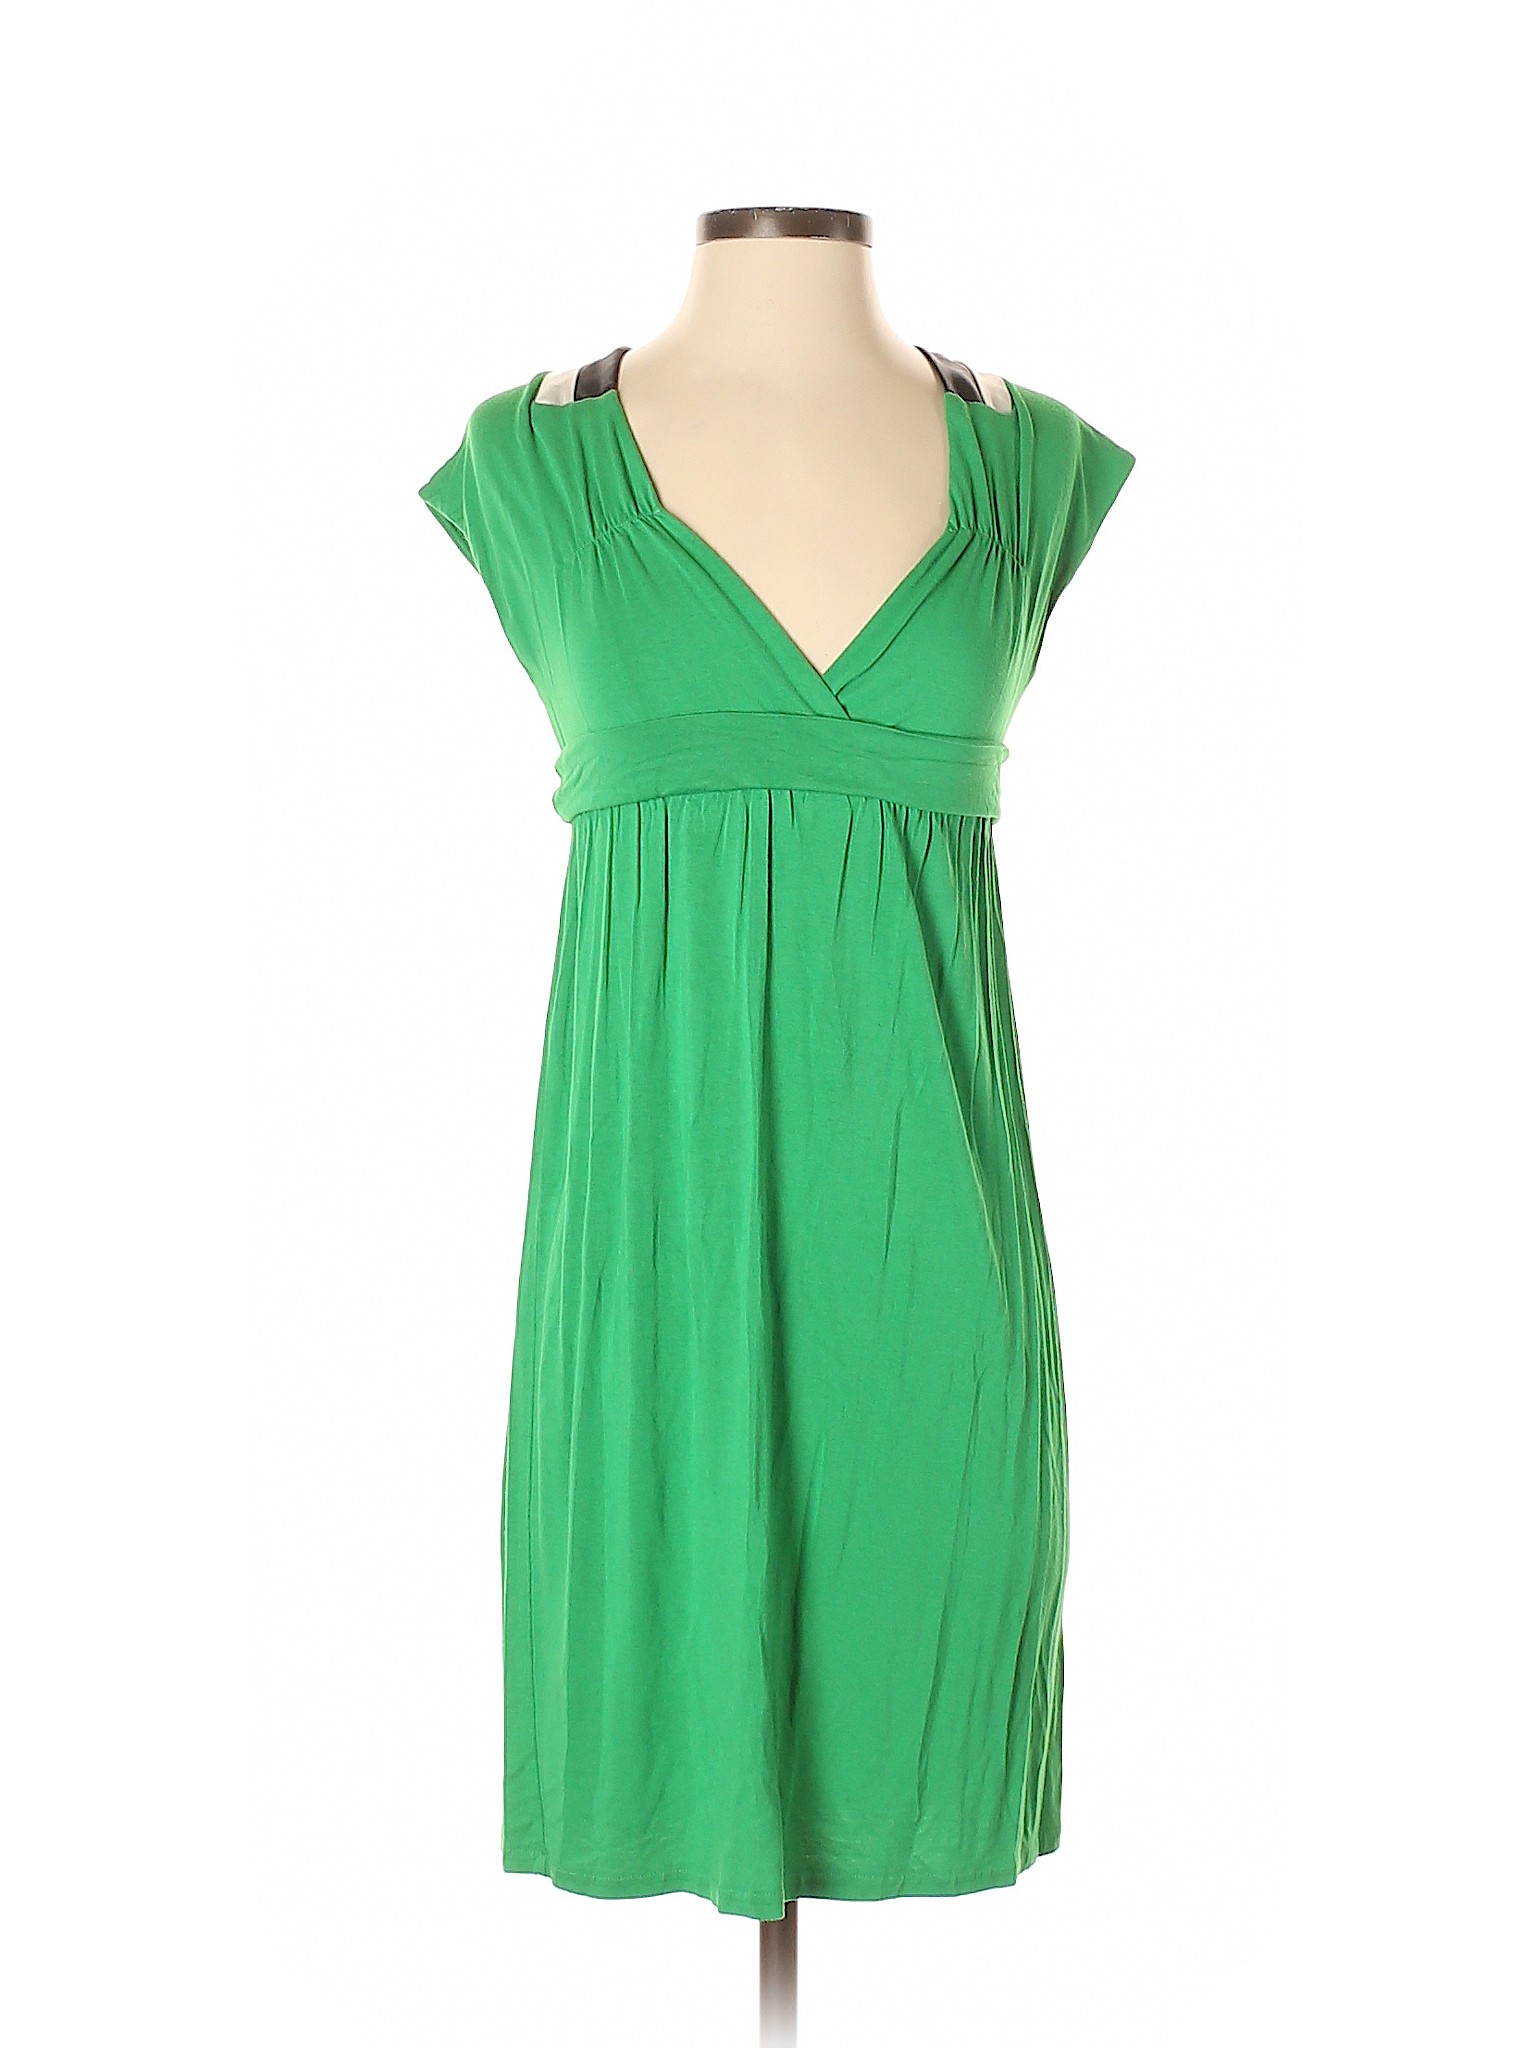 Banana Republic Factory Store Women Green Casual Dress 2 | eBay